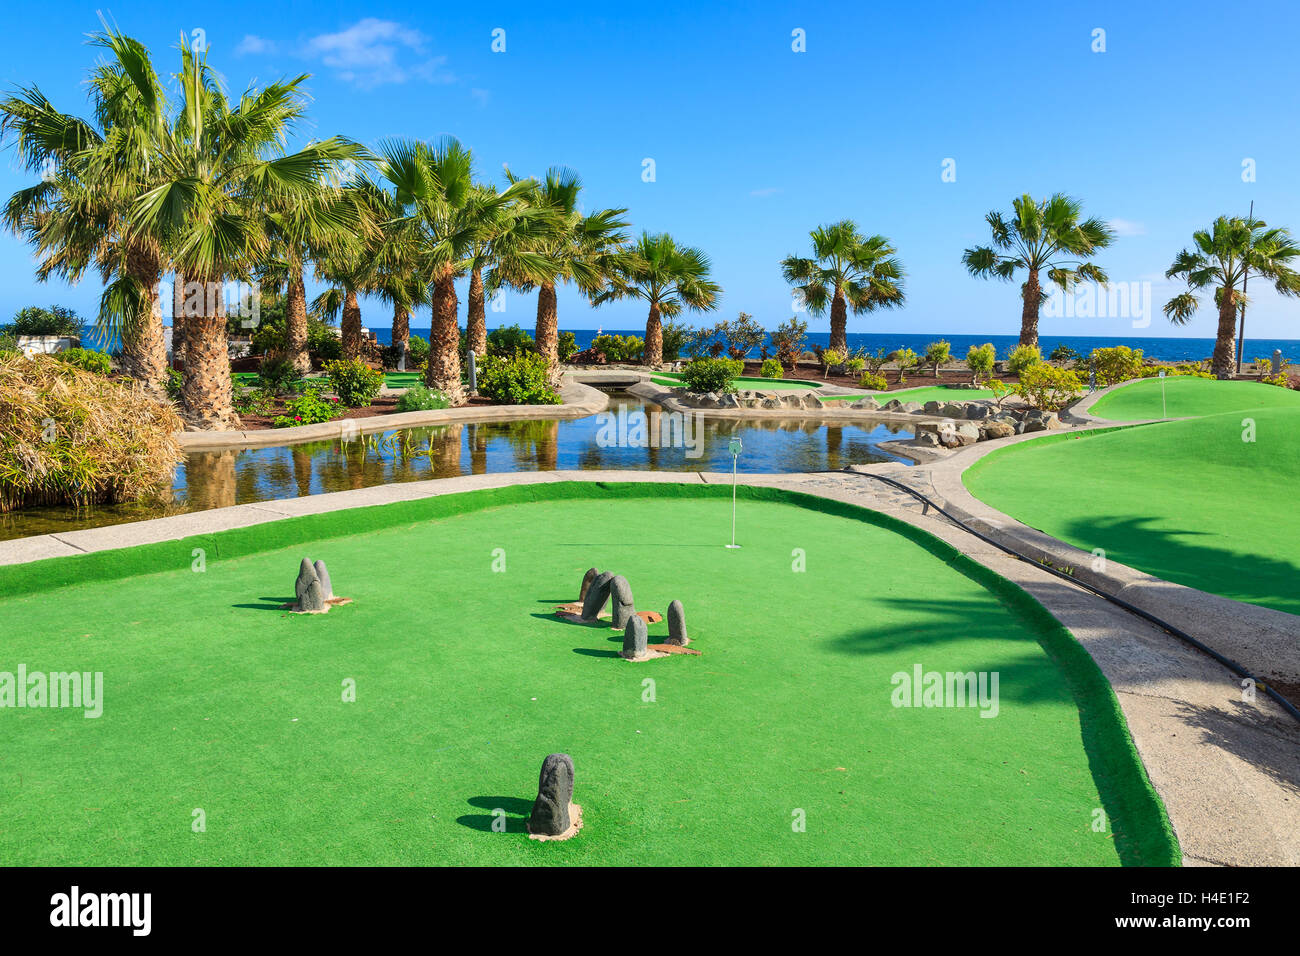 LAS PLAYITAS, Fuerteventura - Febbraio 7, 2014: hotel bellissimo giardino sulla costa di Isola di Fuerteventura. Le isole Canarie sono meta di vacanze. Foto Stock